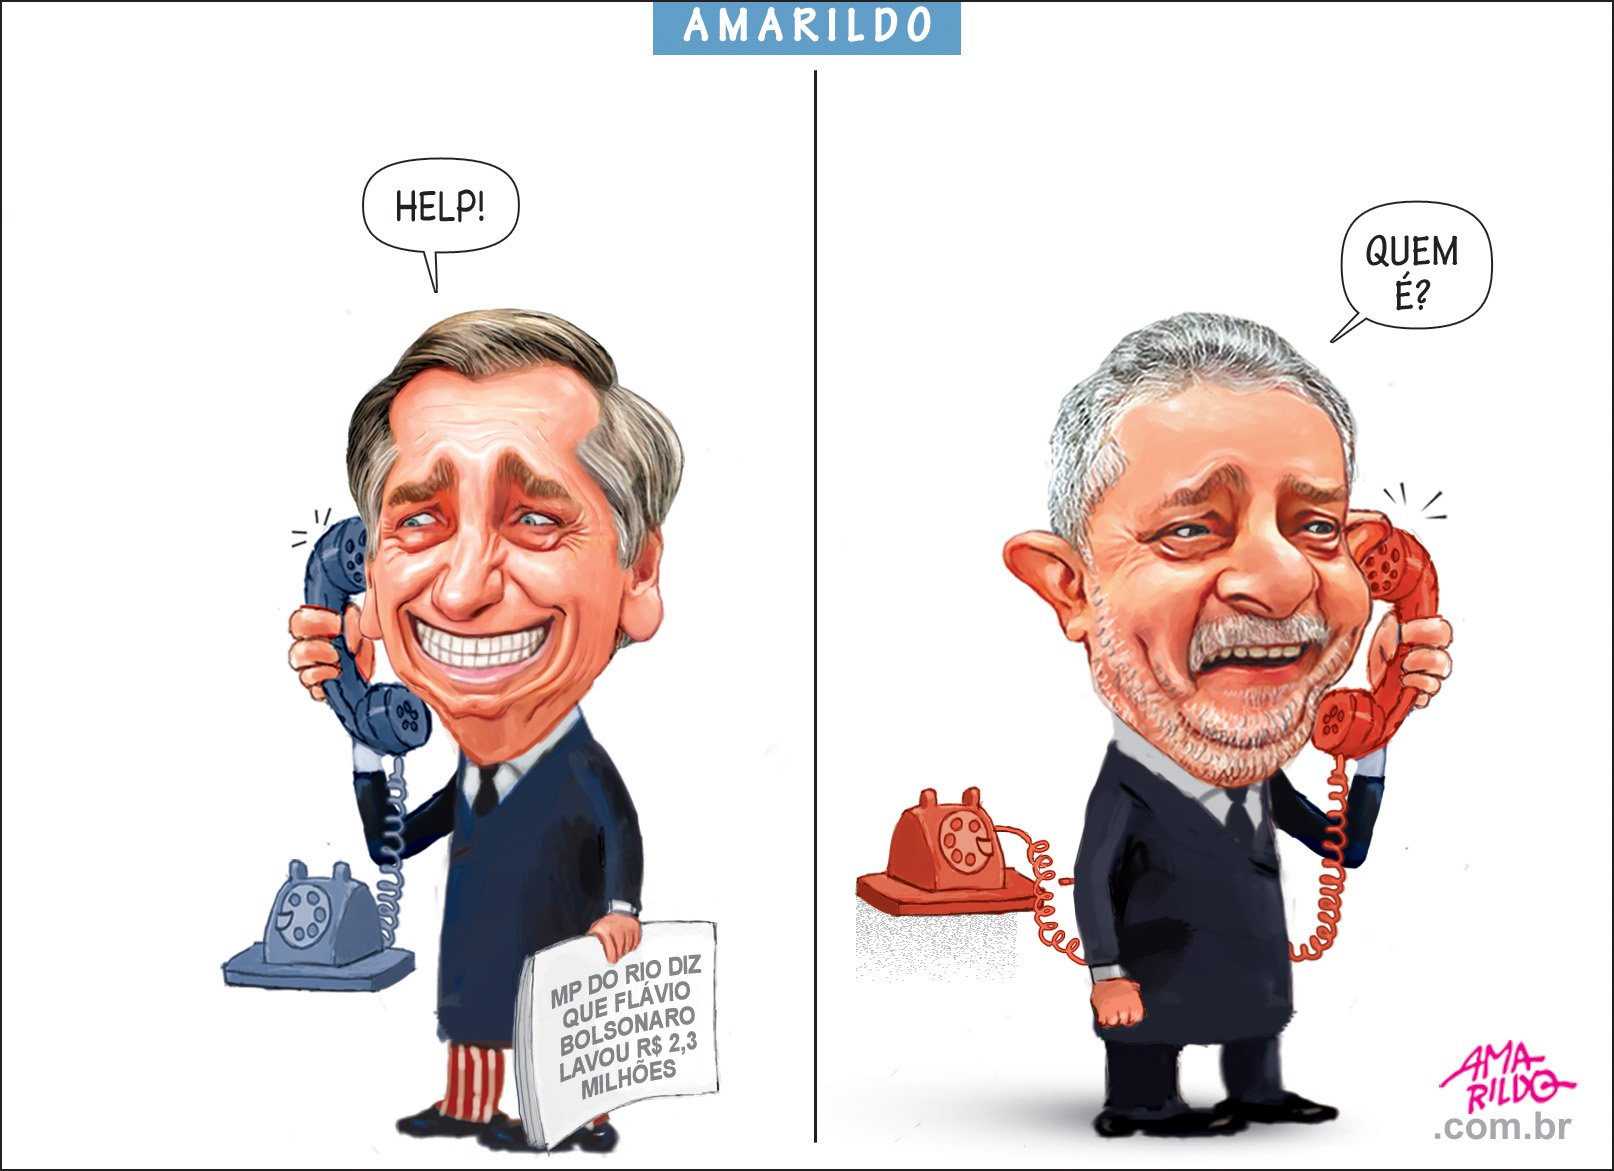 Na charge do Amarildo: Lula, Bolsonaro e filhos | A Gazeta